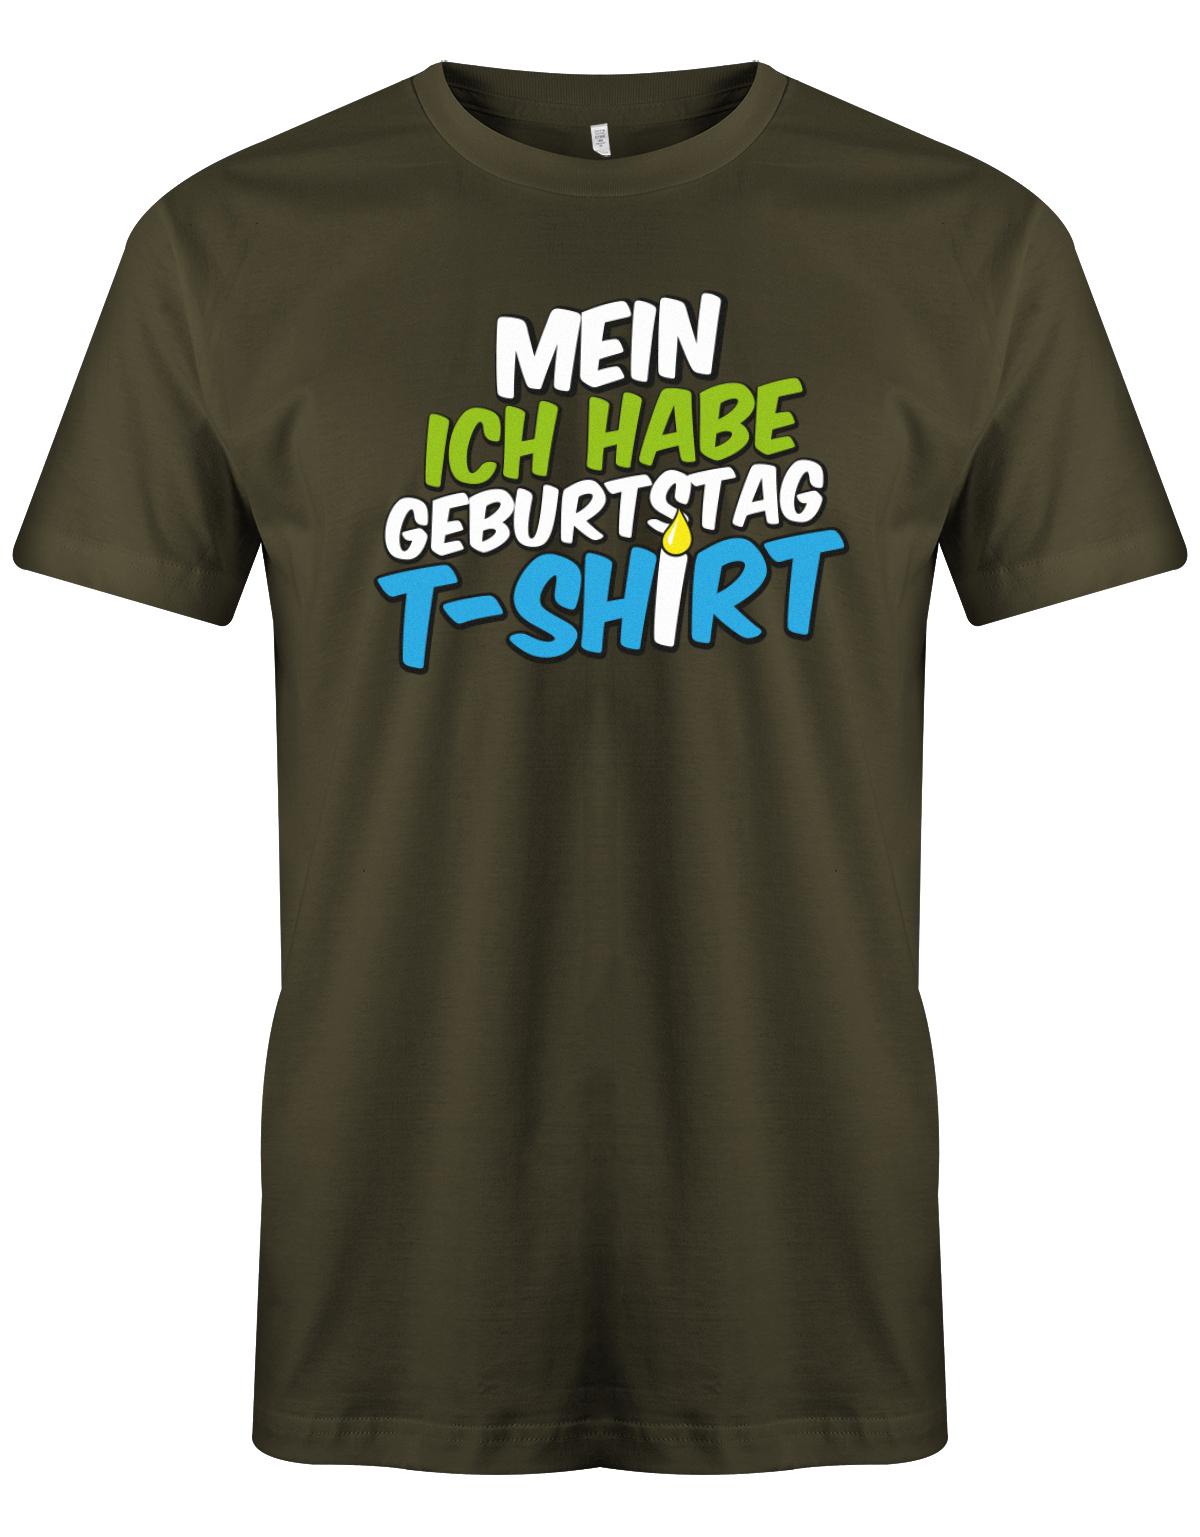 Mein-ich-habe-Geburtstag-t-Shirt-Herren-Army